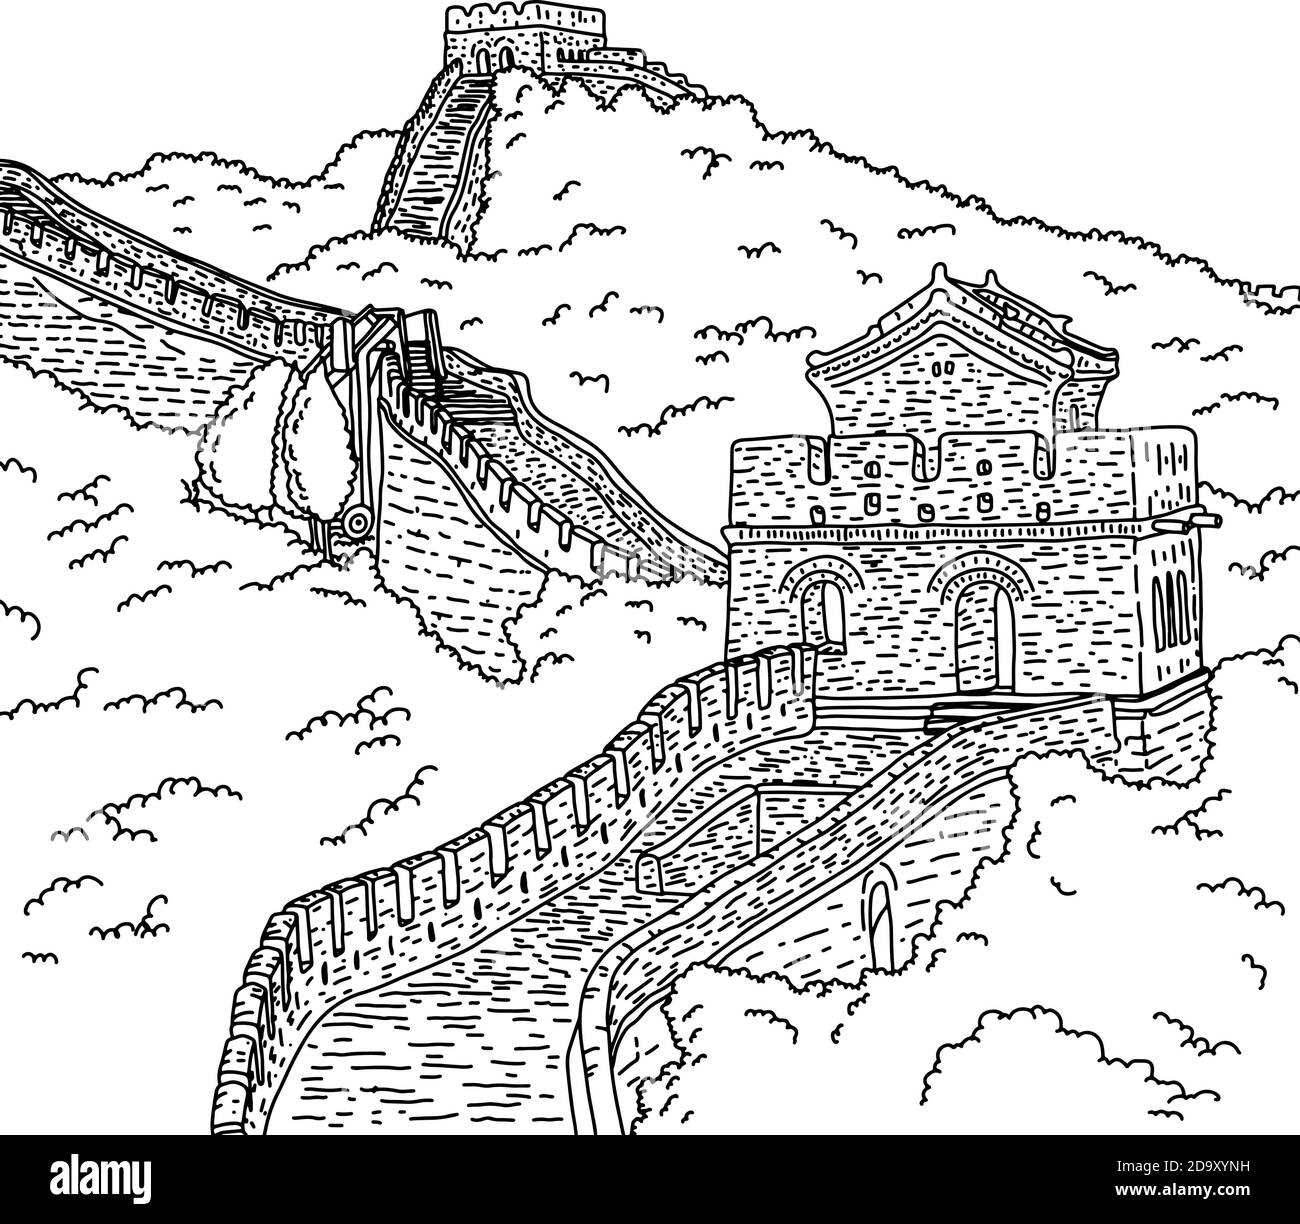 Große Wand von china Vektor Illustration Skizze Doodle Hand gezeichnet Mit schwarzen Linien isoliert auf weißem Hintergrund Stock Vektor